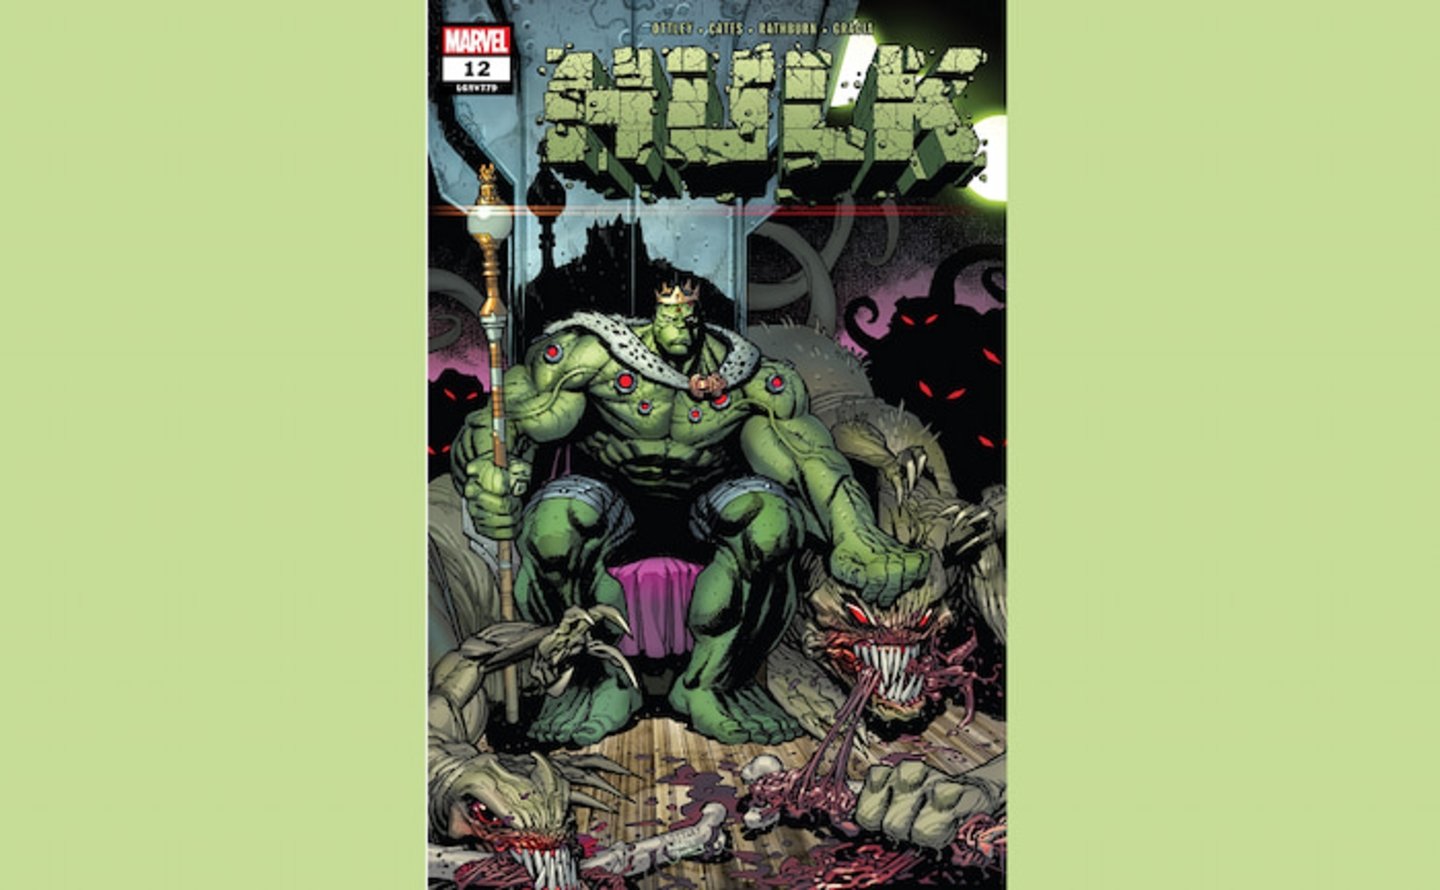 Portada del volumen #12 del cómic Hulk, de Marvel